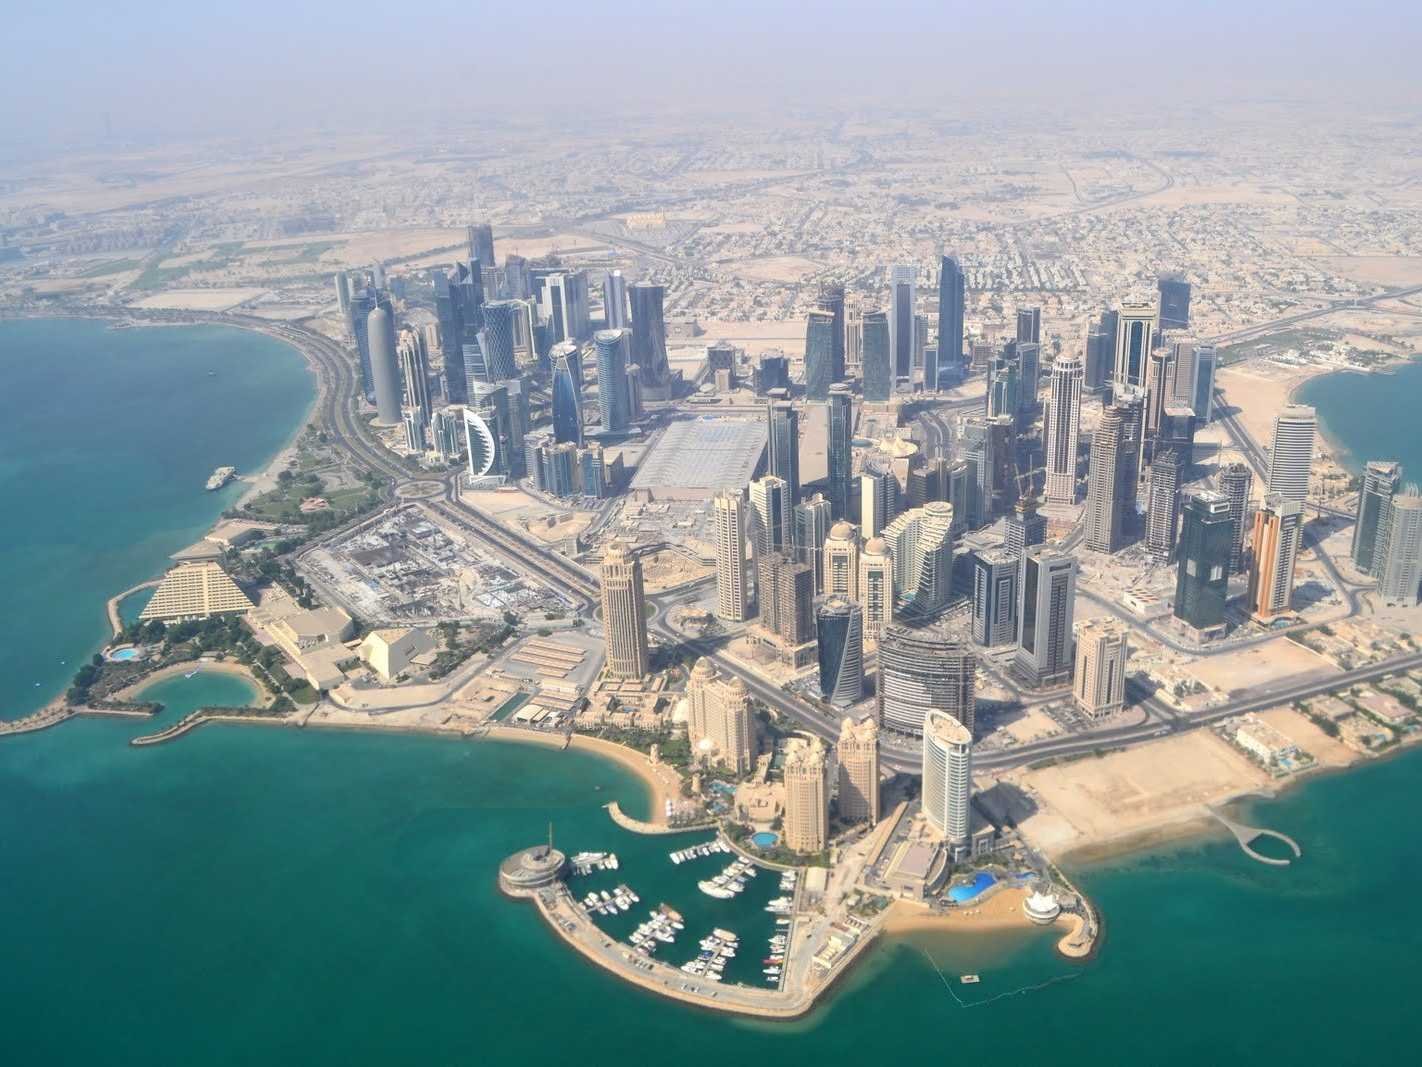  تور قطر ویژه جام جهانی 2022